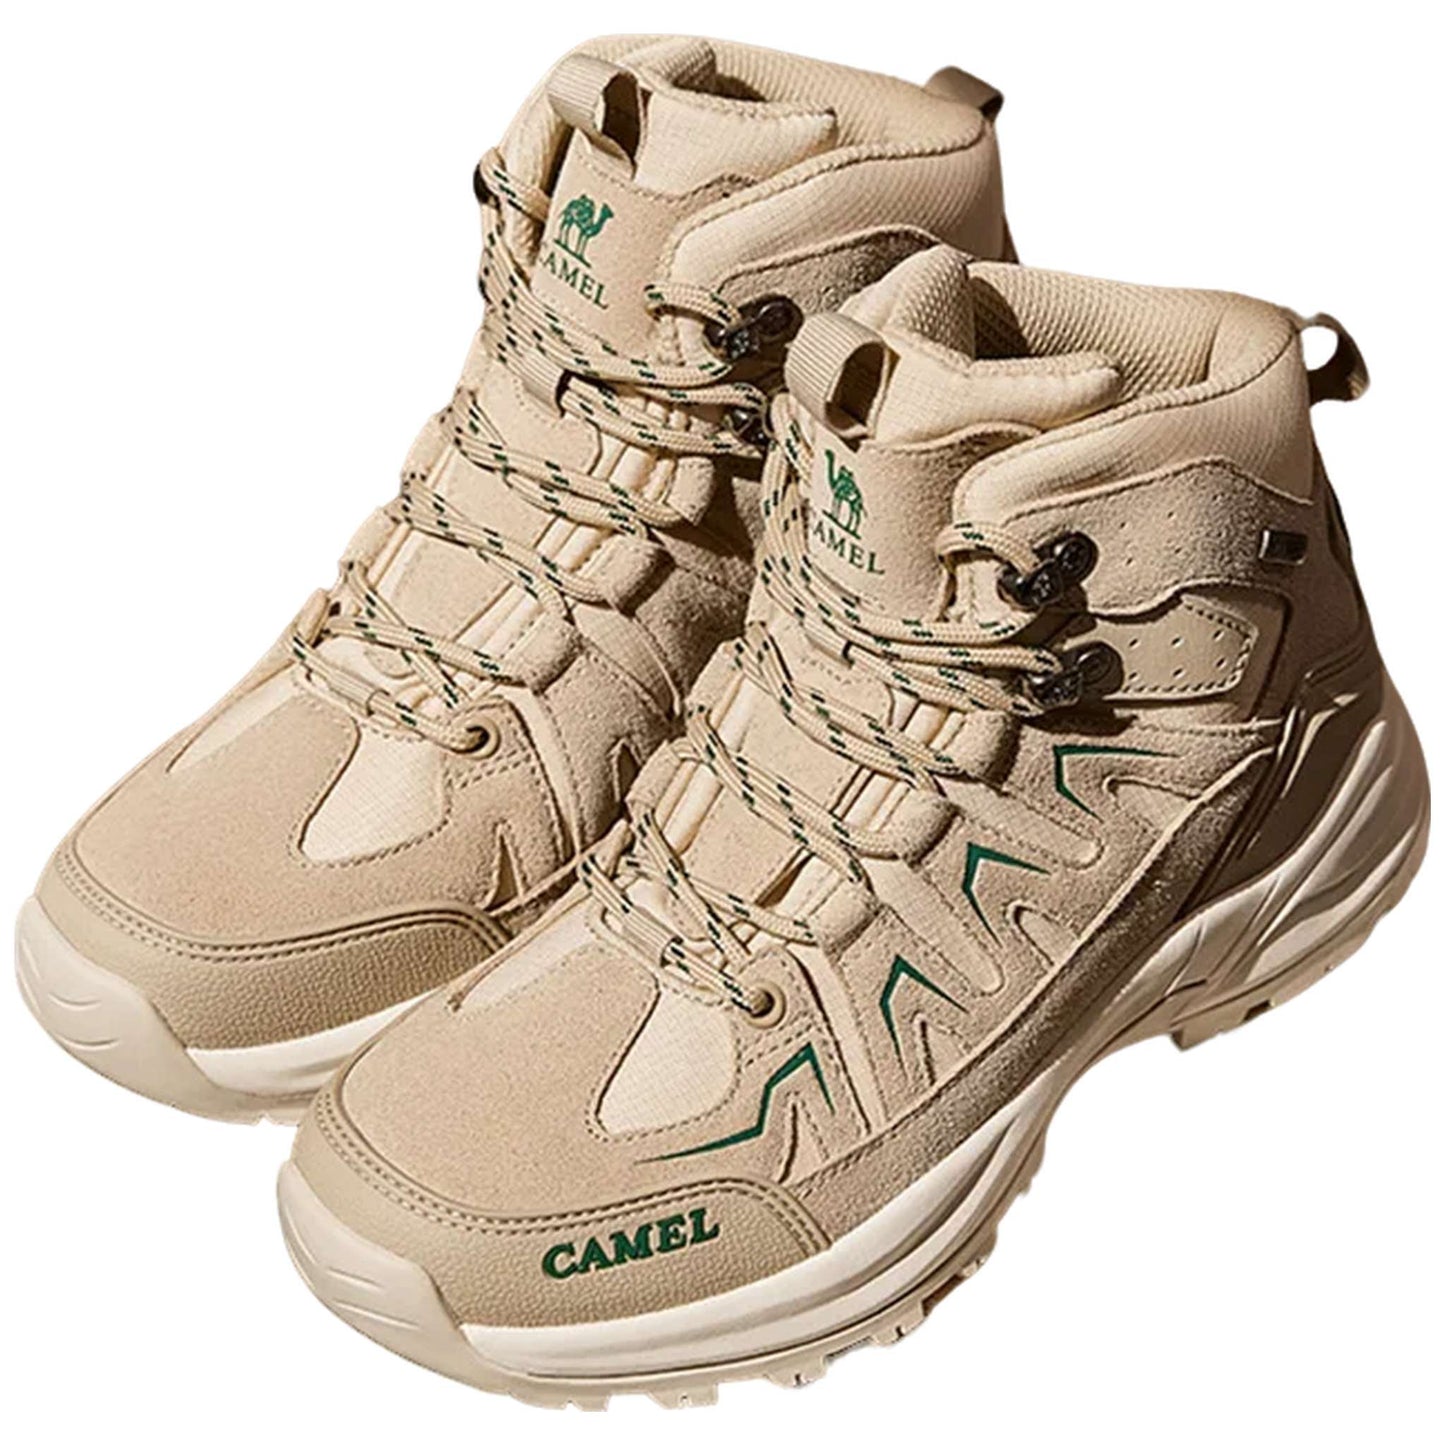 Men's Waterproof High-Top Hiking Boots - Non-Slip Trekking Shoes